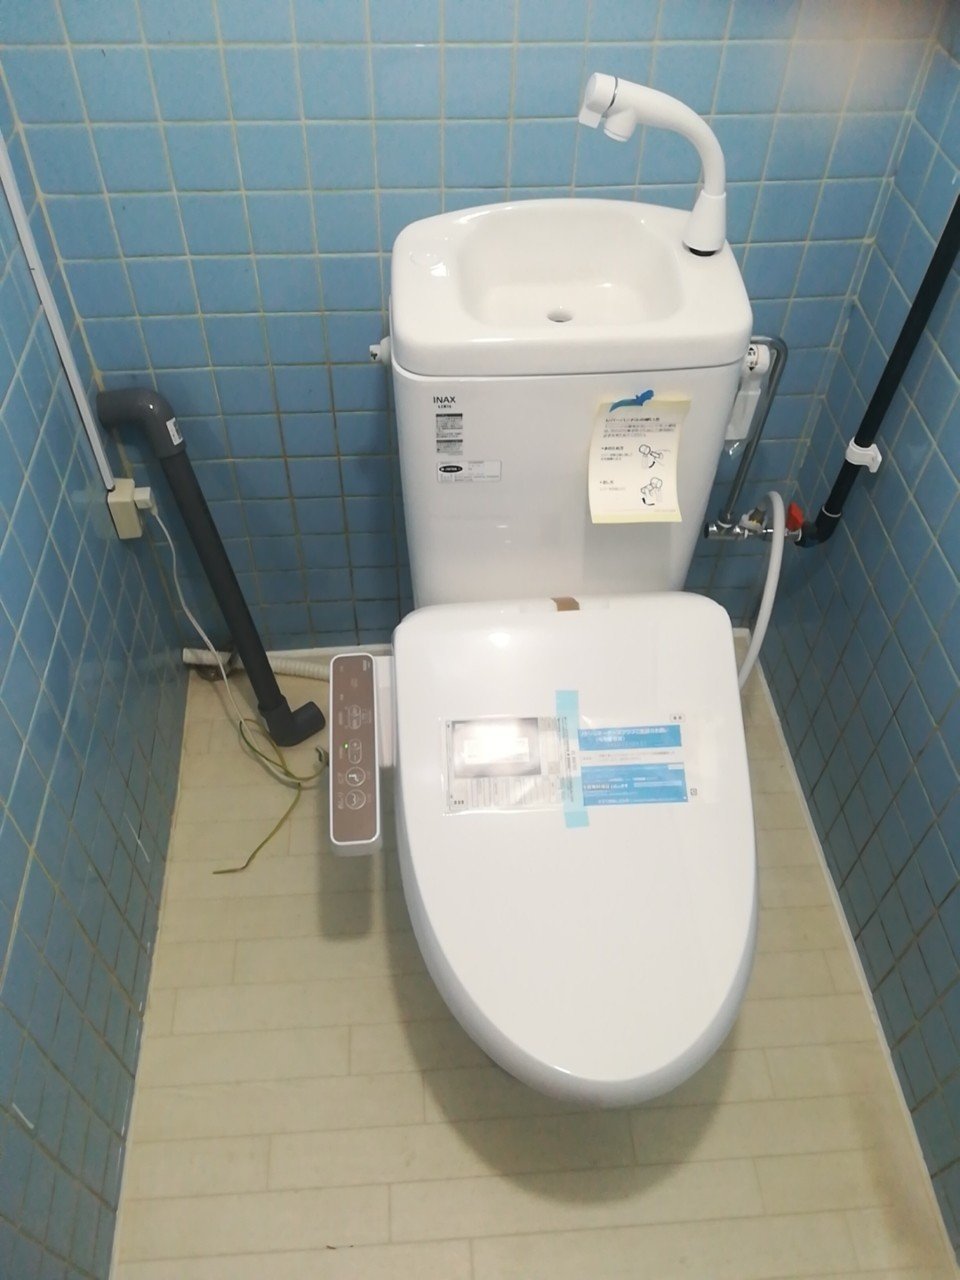 第252話 「DIY 簡易水洗トイレ オーバーフロー管の設置」2020.7.27｜ジョイフル大家｜note